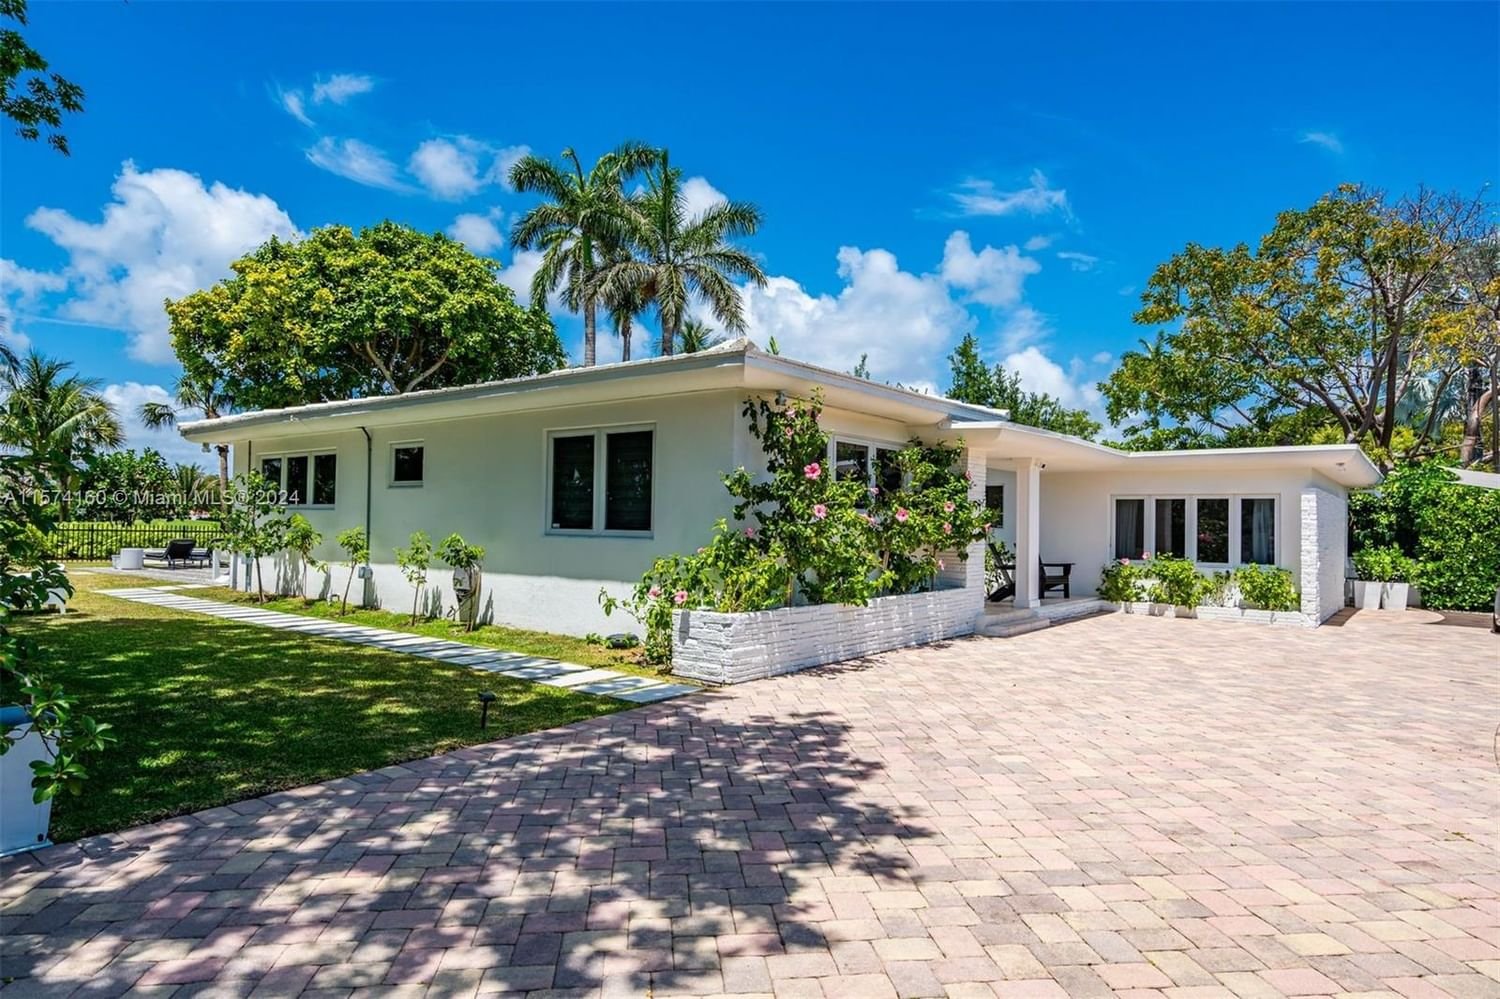 Real estate property located at 6100 La Gorce Dr, Miami-Dade County, BEACH VIEW ADDITION, Miami Beach, FL